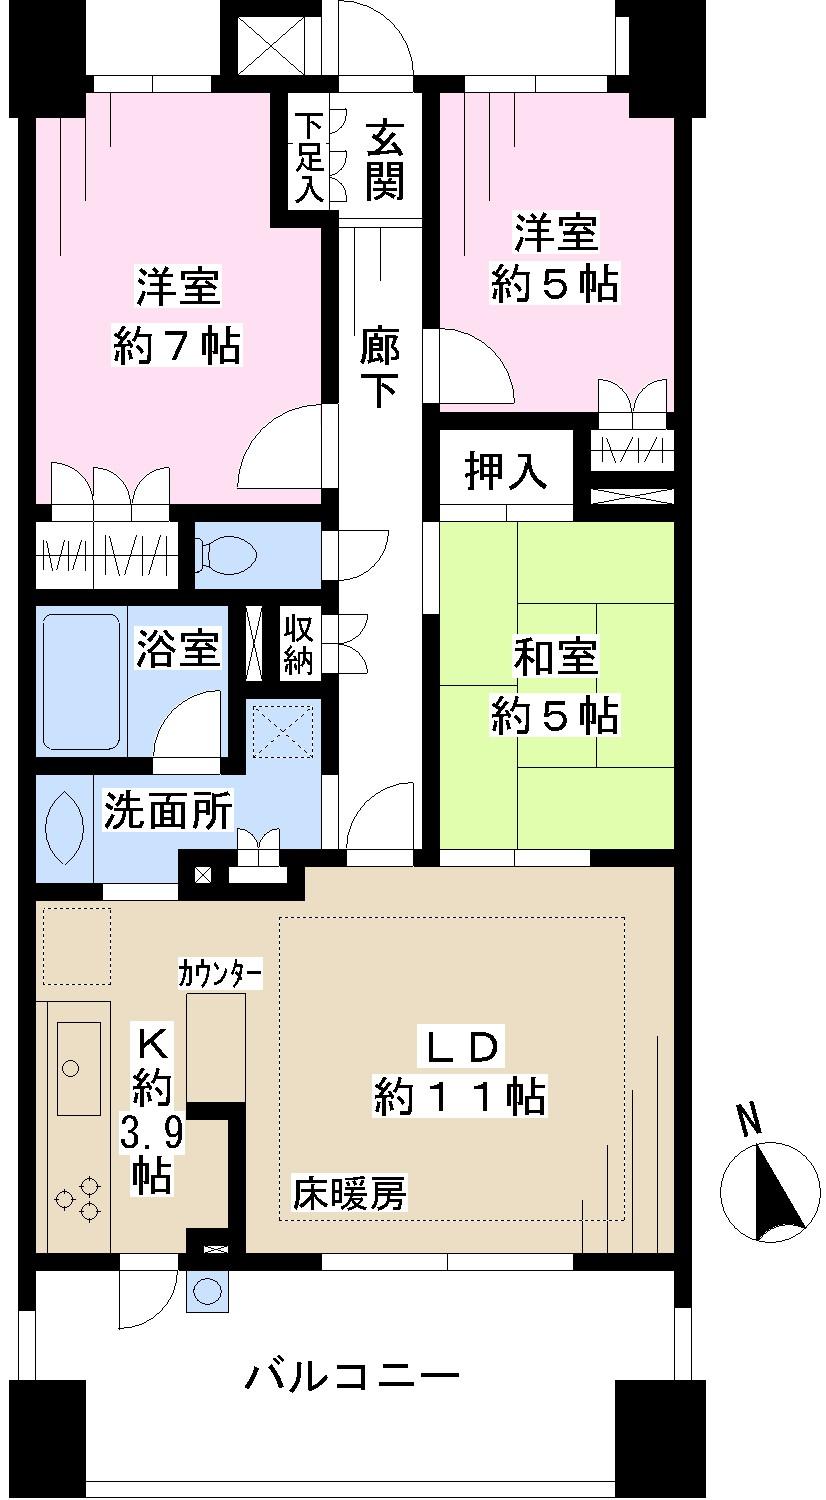 Floor plan. 3LDK, Price 27,700,000 yen, Occupied area 73.02 sq m , Balcony area 12.7 sq m floor plan